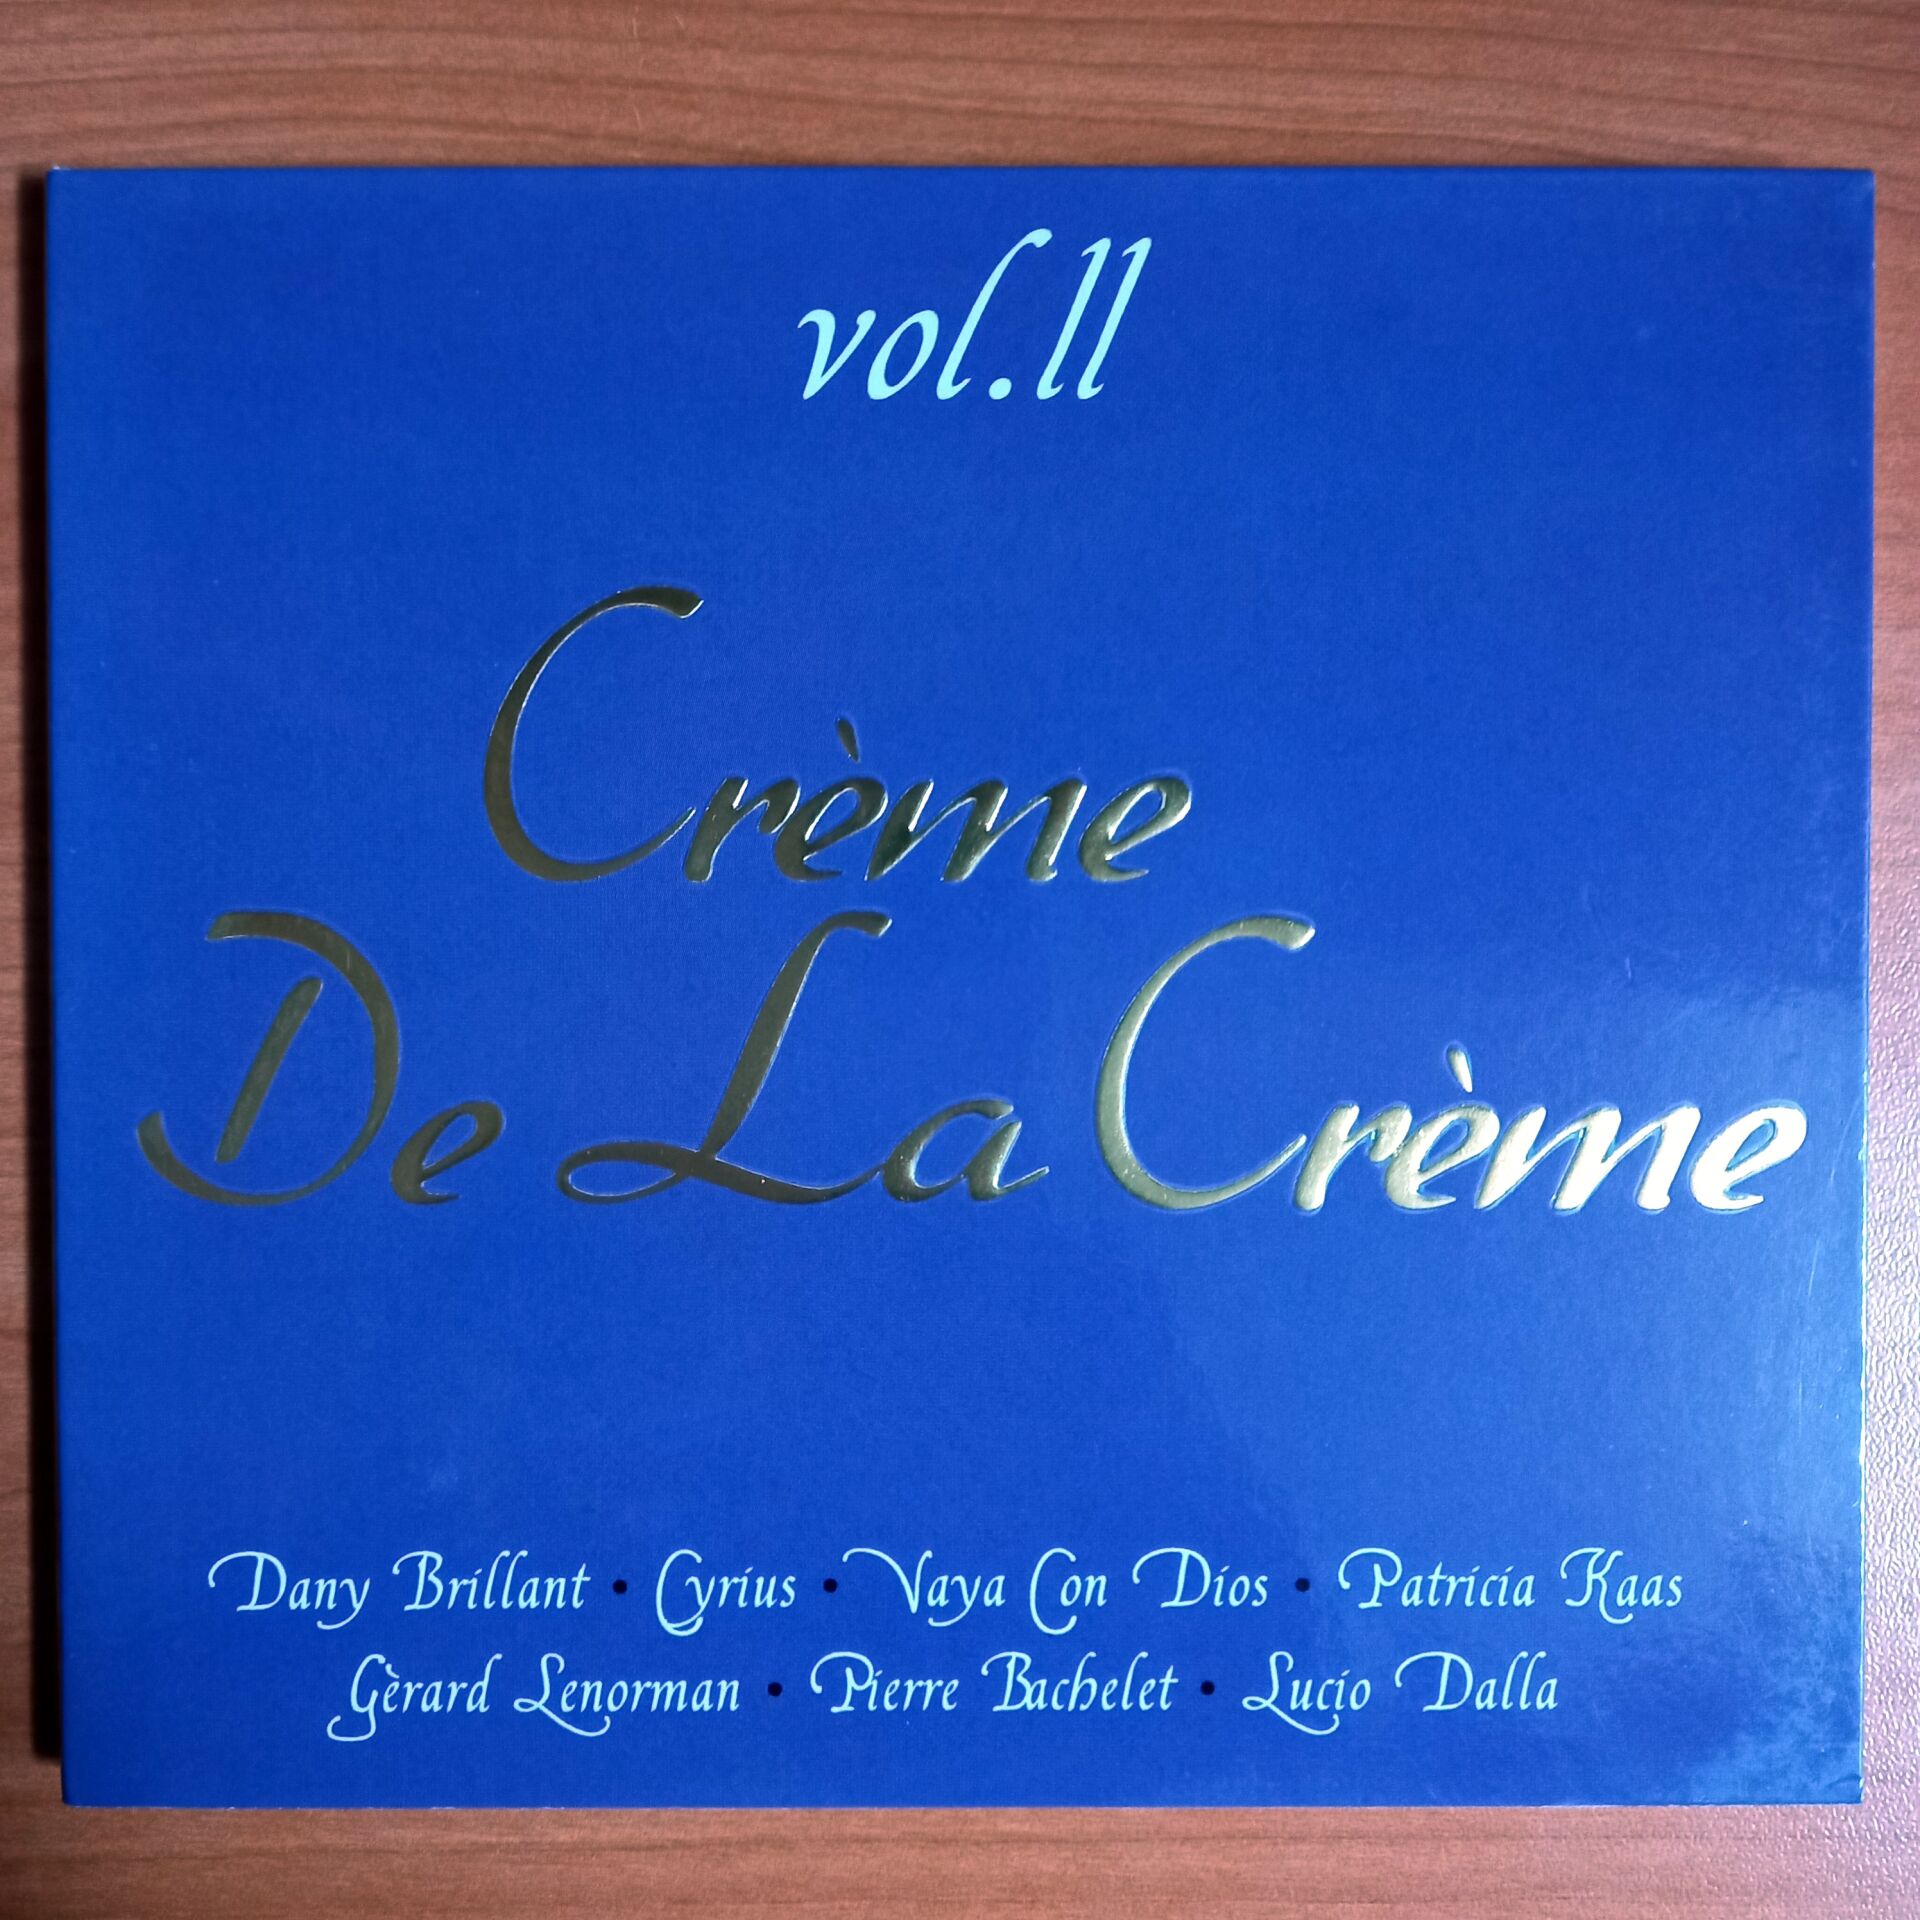 CREME DE LA CREME VOL 2 / DANY BRILLANT, CYRIUS, VAYA CON DIOS, PATRICIA KAAS (2007) - CD 2.EL